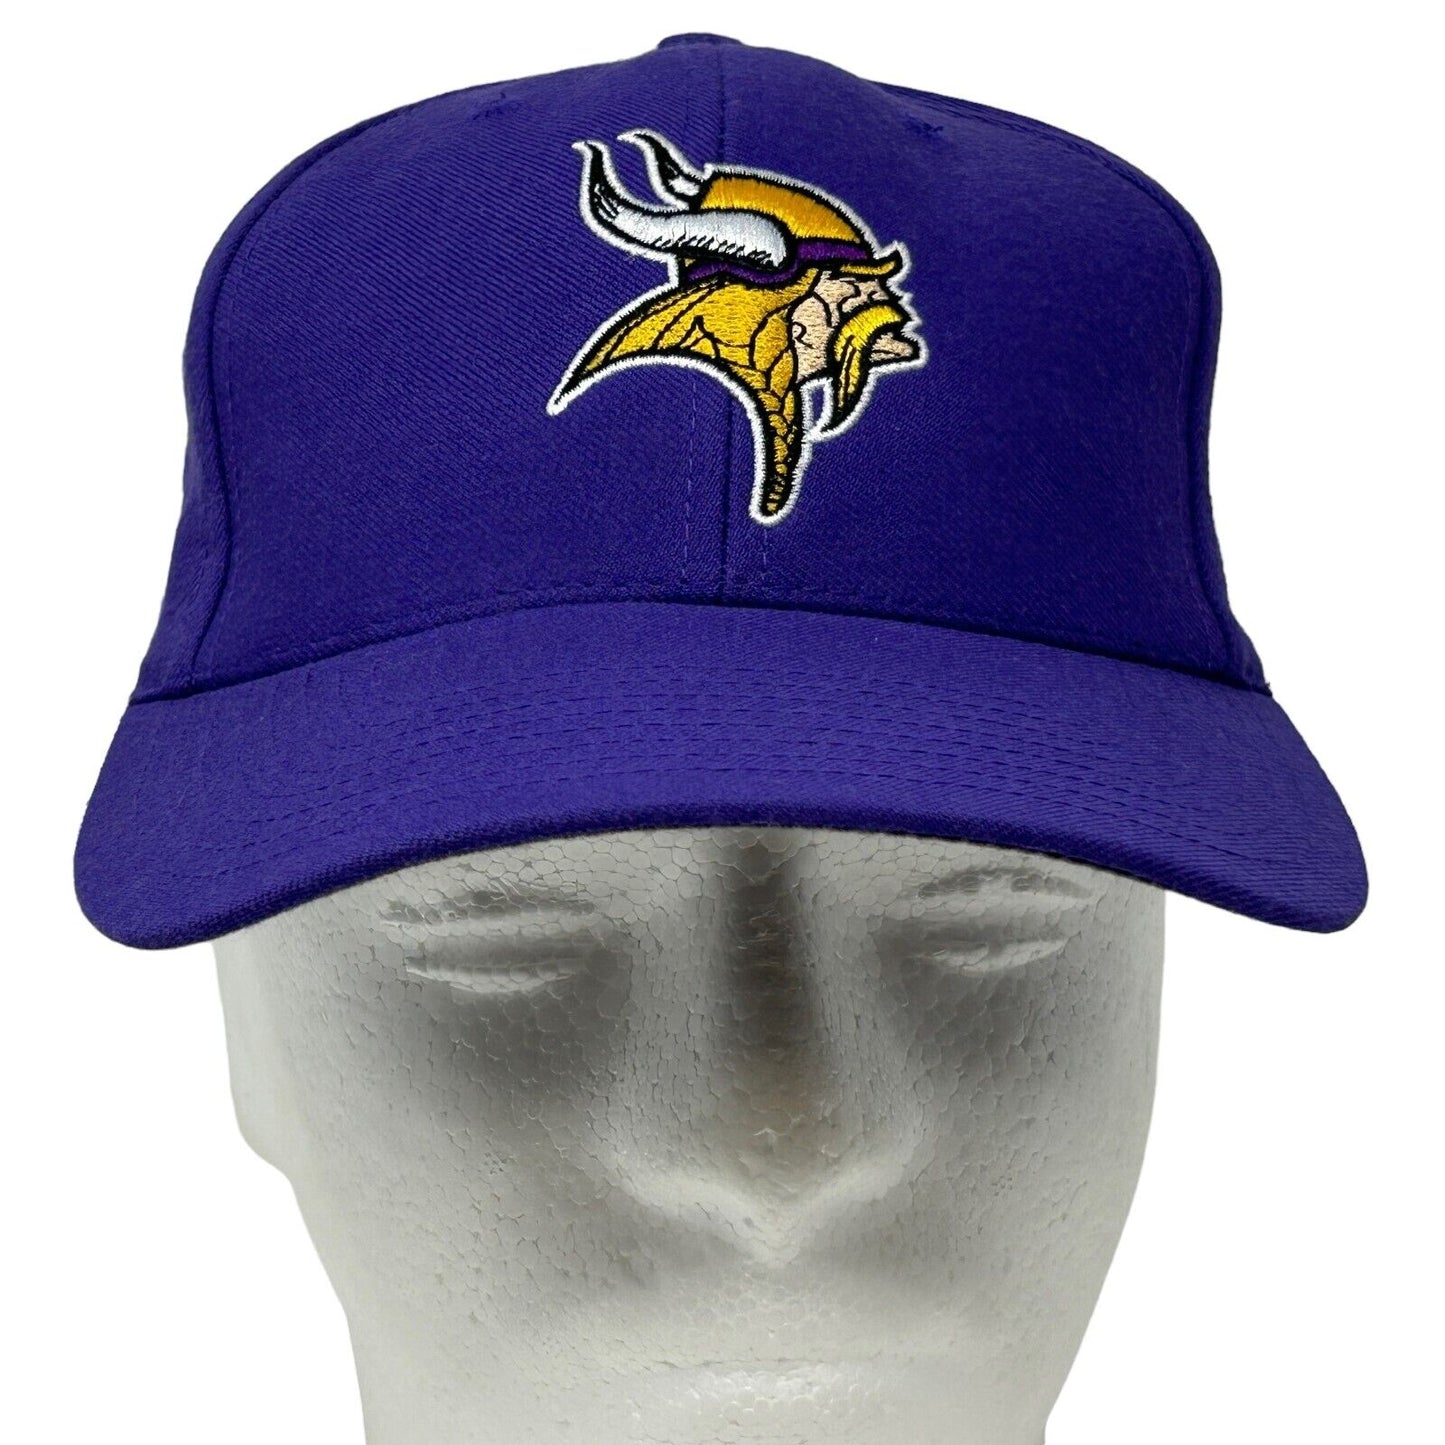 Minnesota Vikings Snapback Hat Vintage 90s Purple NFL Football Baseball Cap New